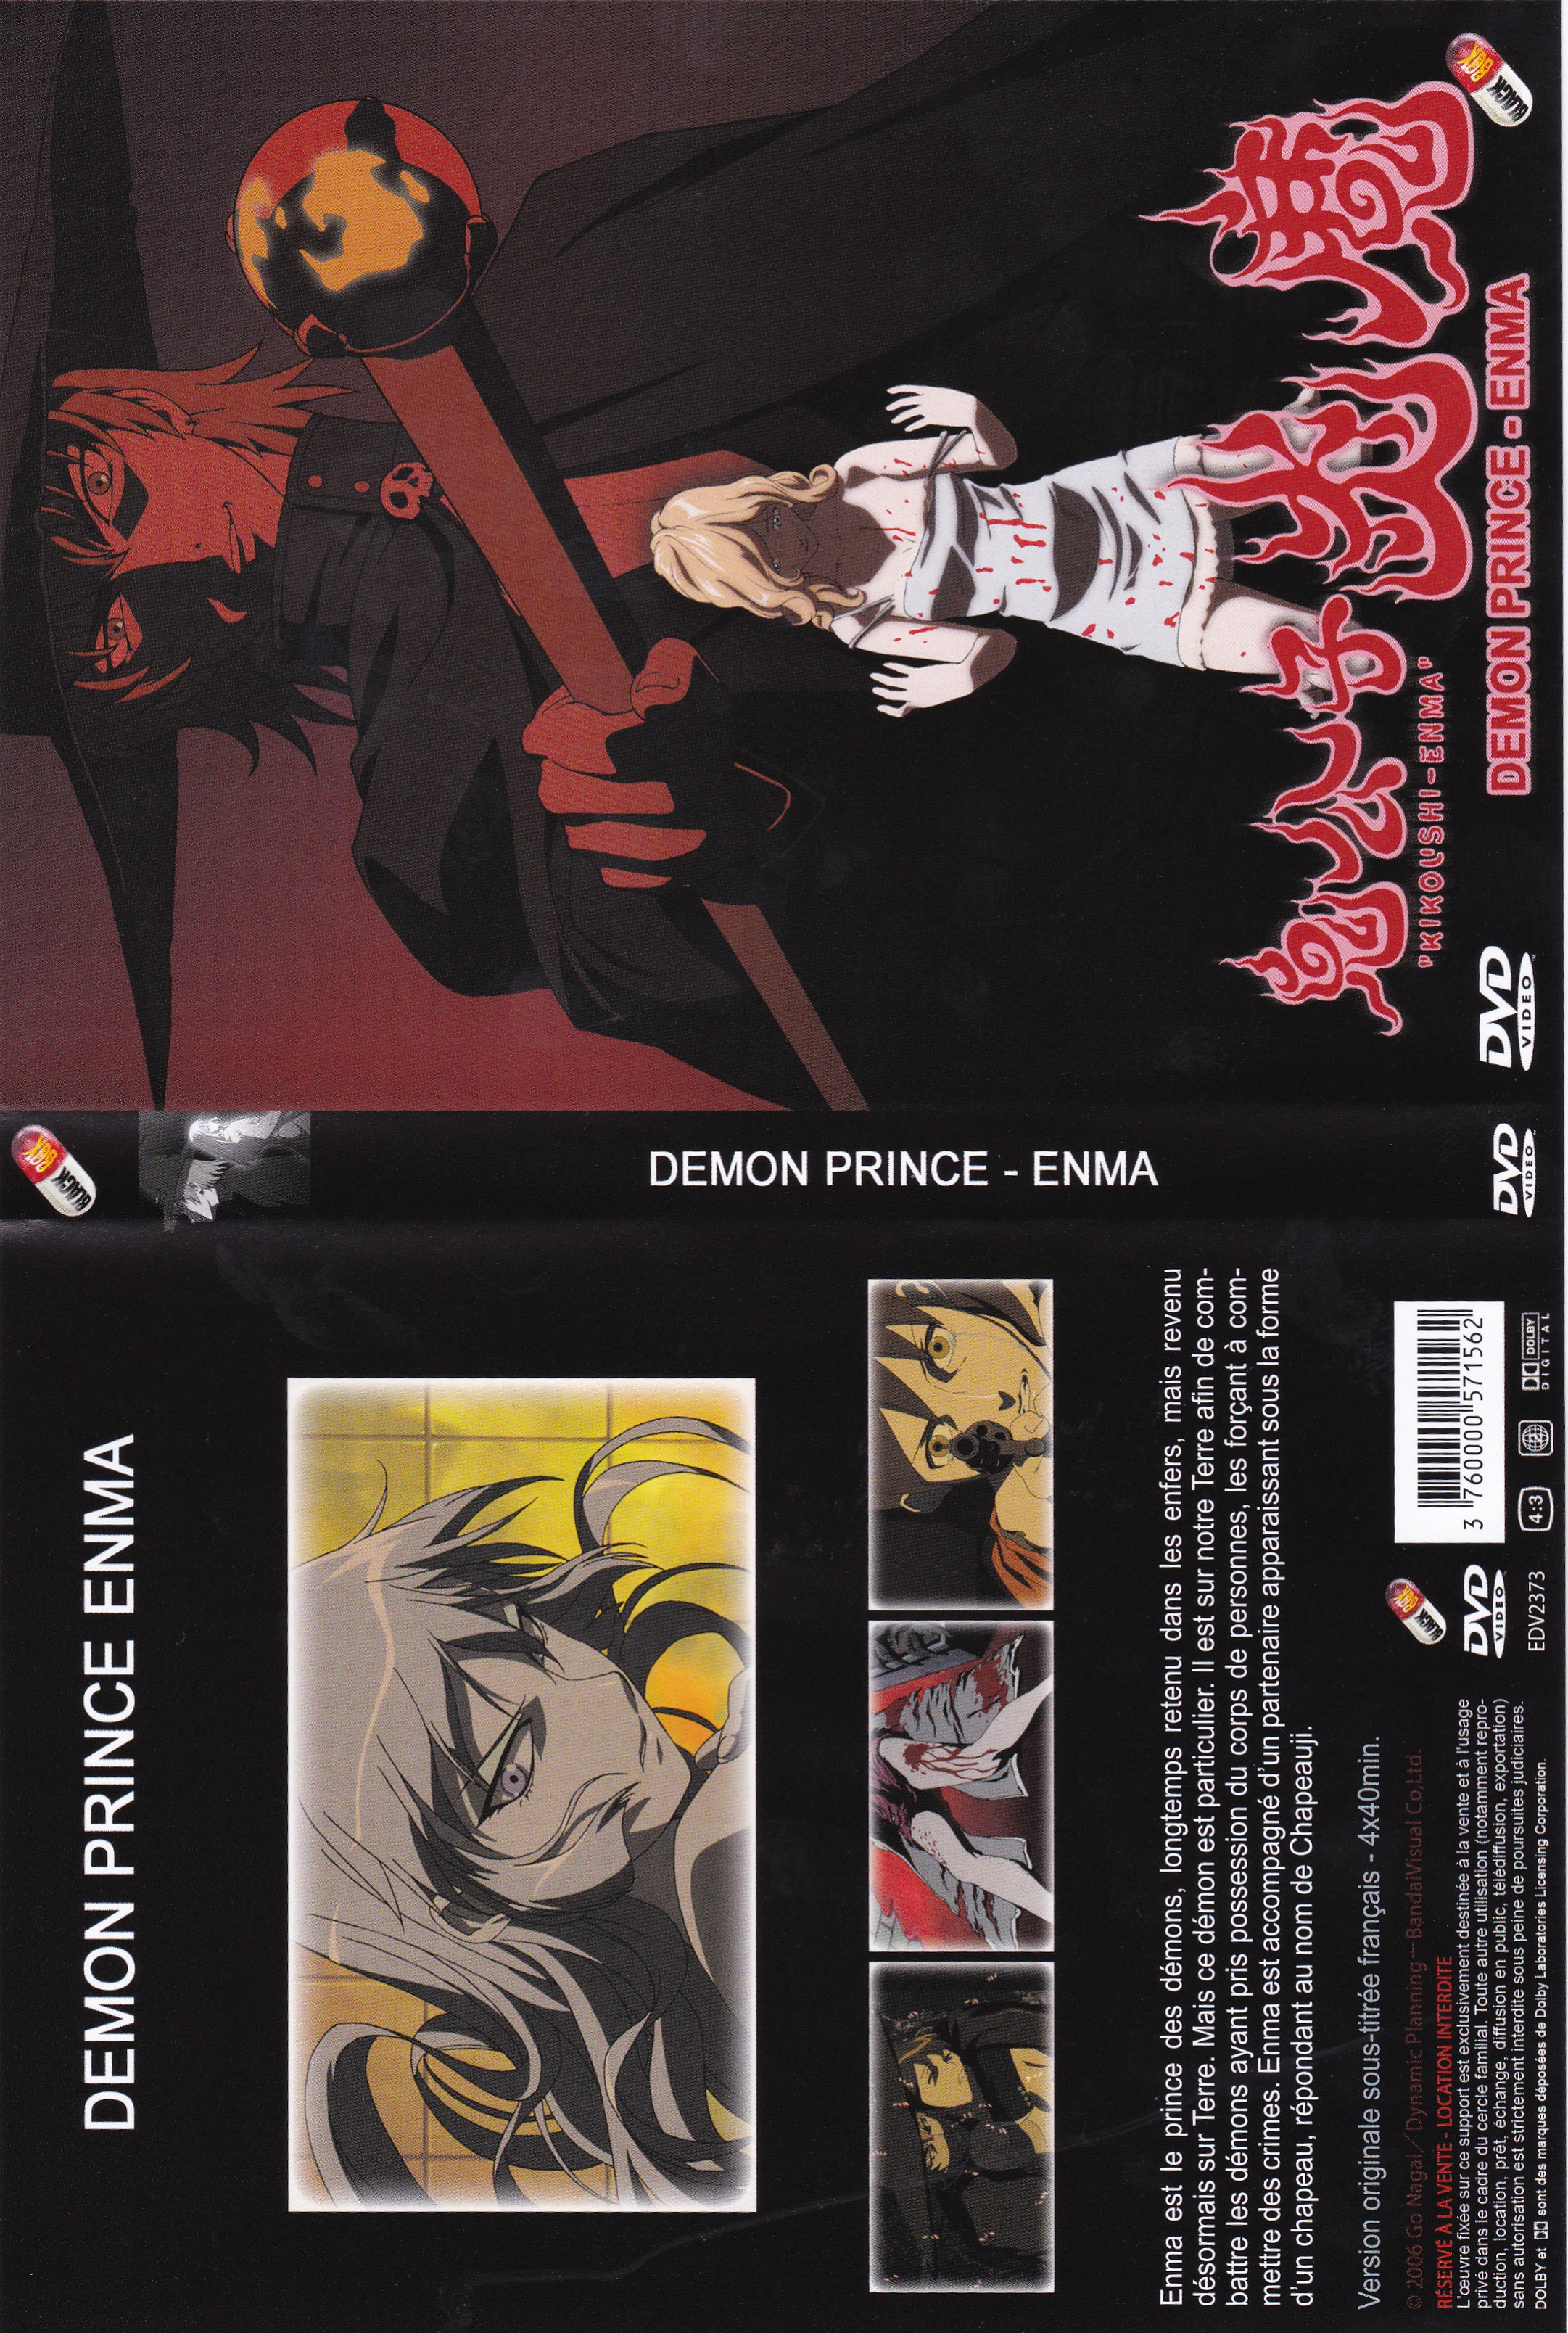 Jaquette DVD Demon Prince - Enma